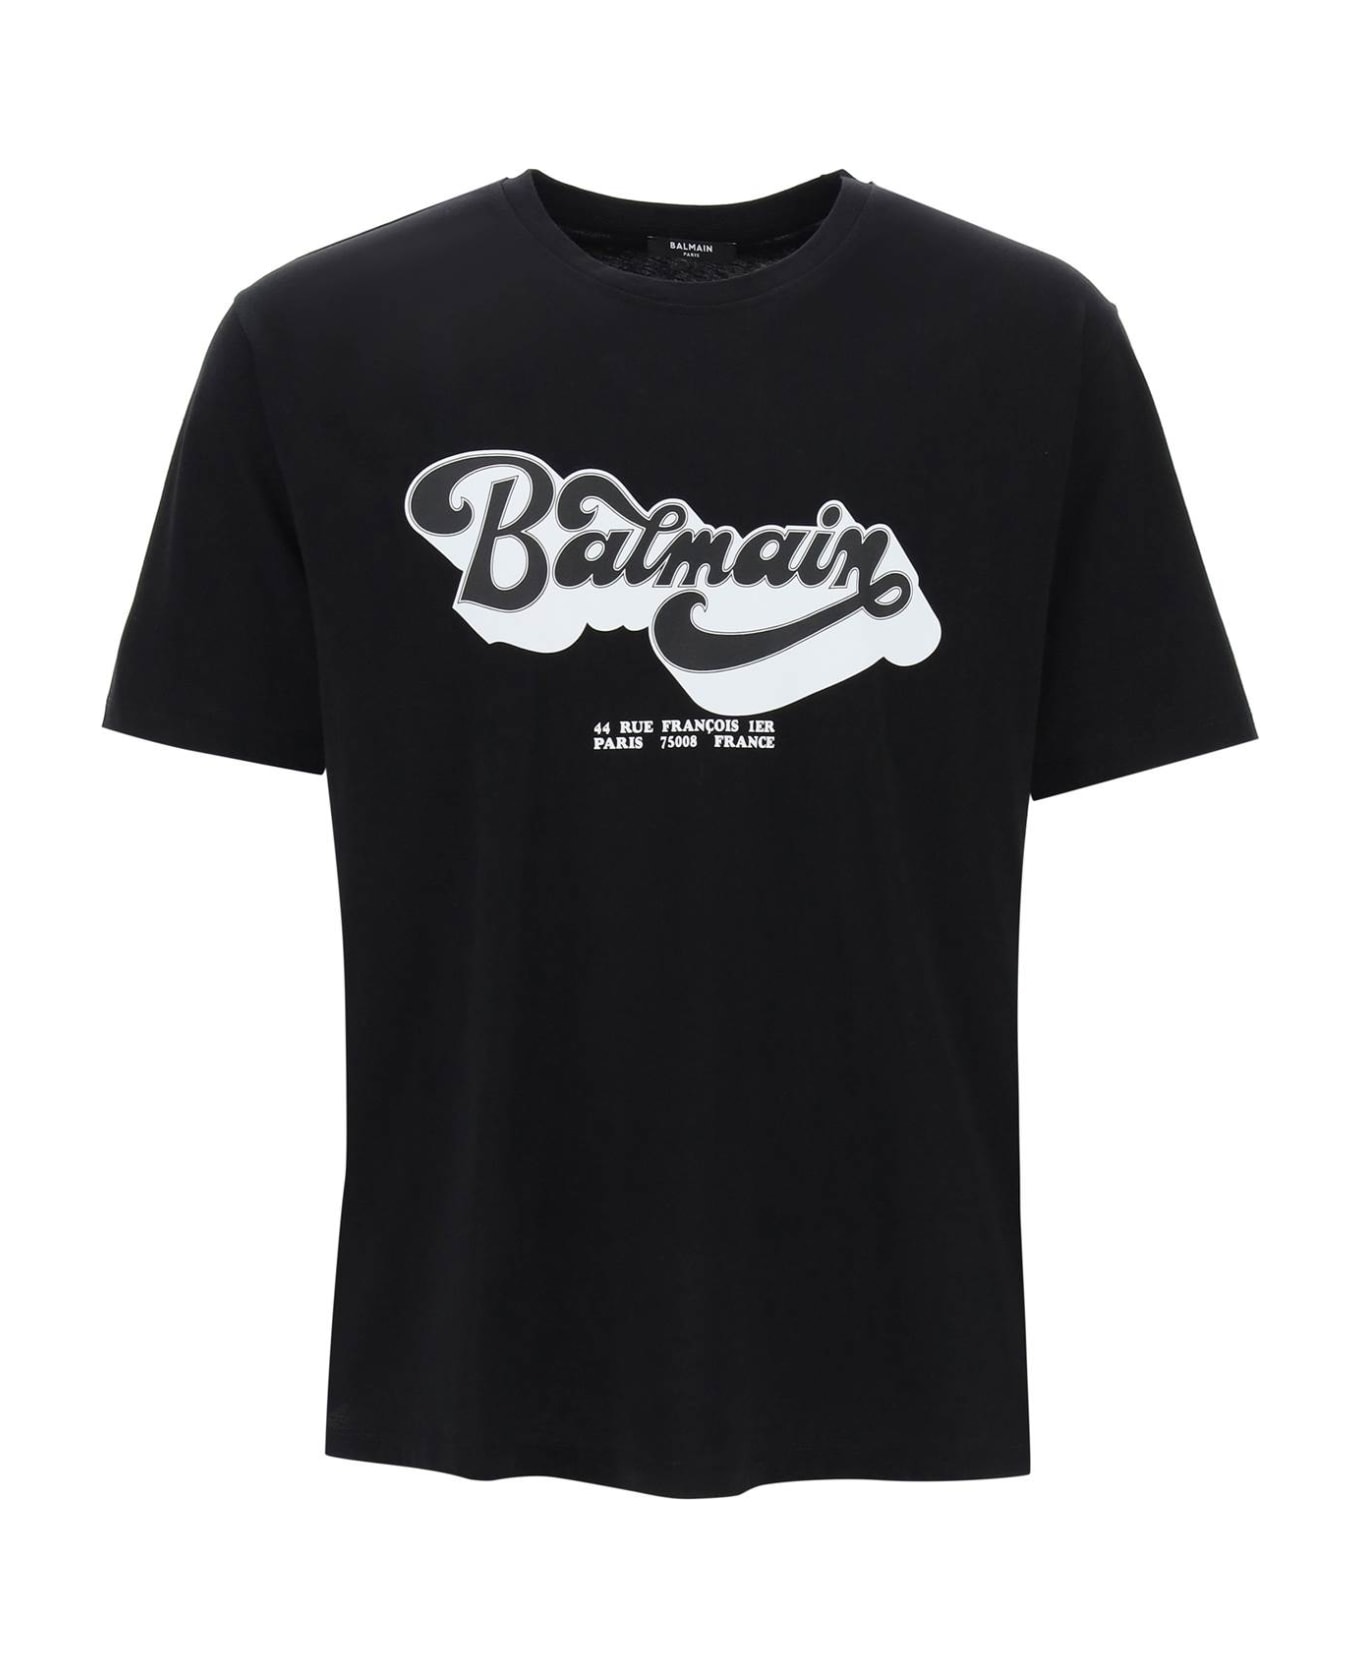 Balmain Black Cotton T-shirt - Noir/blanc シャツ